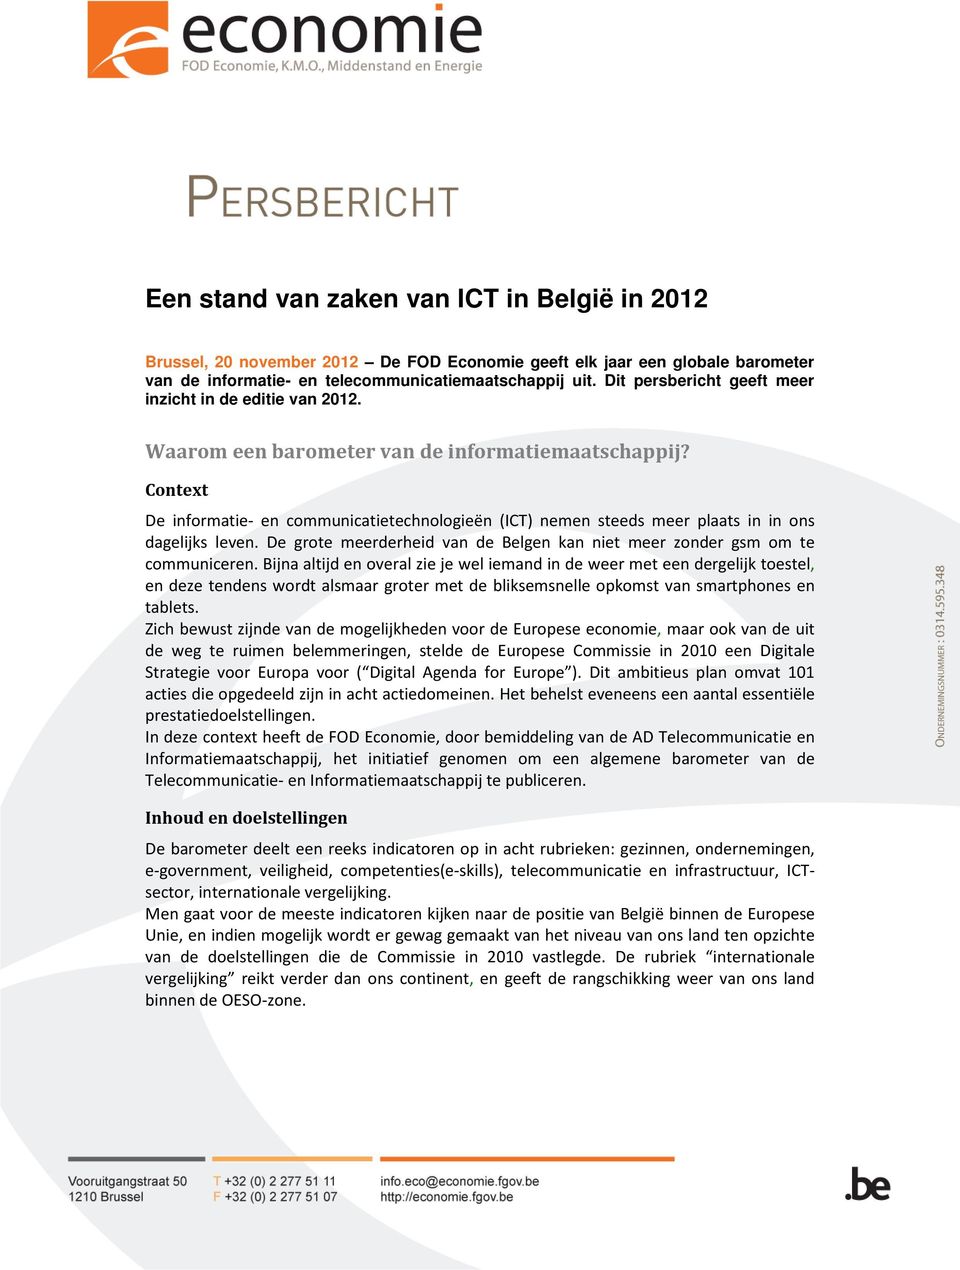 Context De informatie- en communicatietechnologieën (ICT) nemen steeds meer plaats in in ons dagelijks leven. De grote meerderheid van de Belgen kan niet meer zonder gsm om te communiceren.